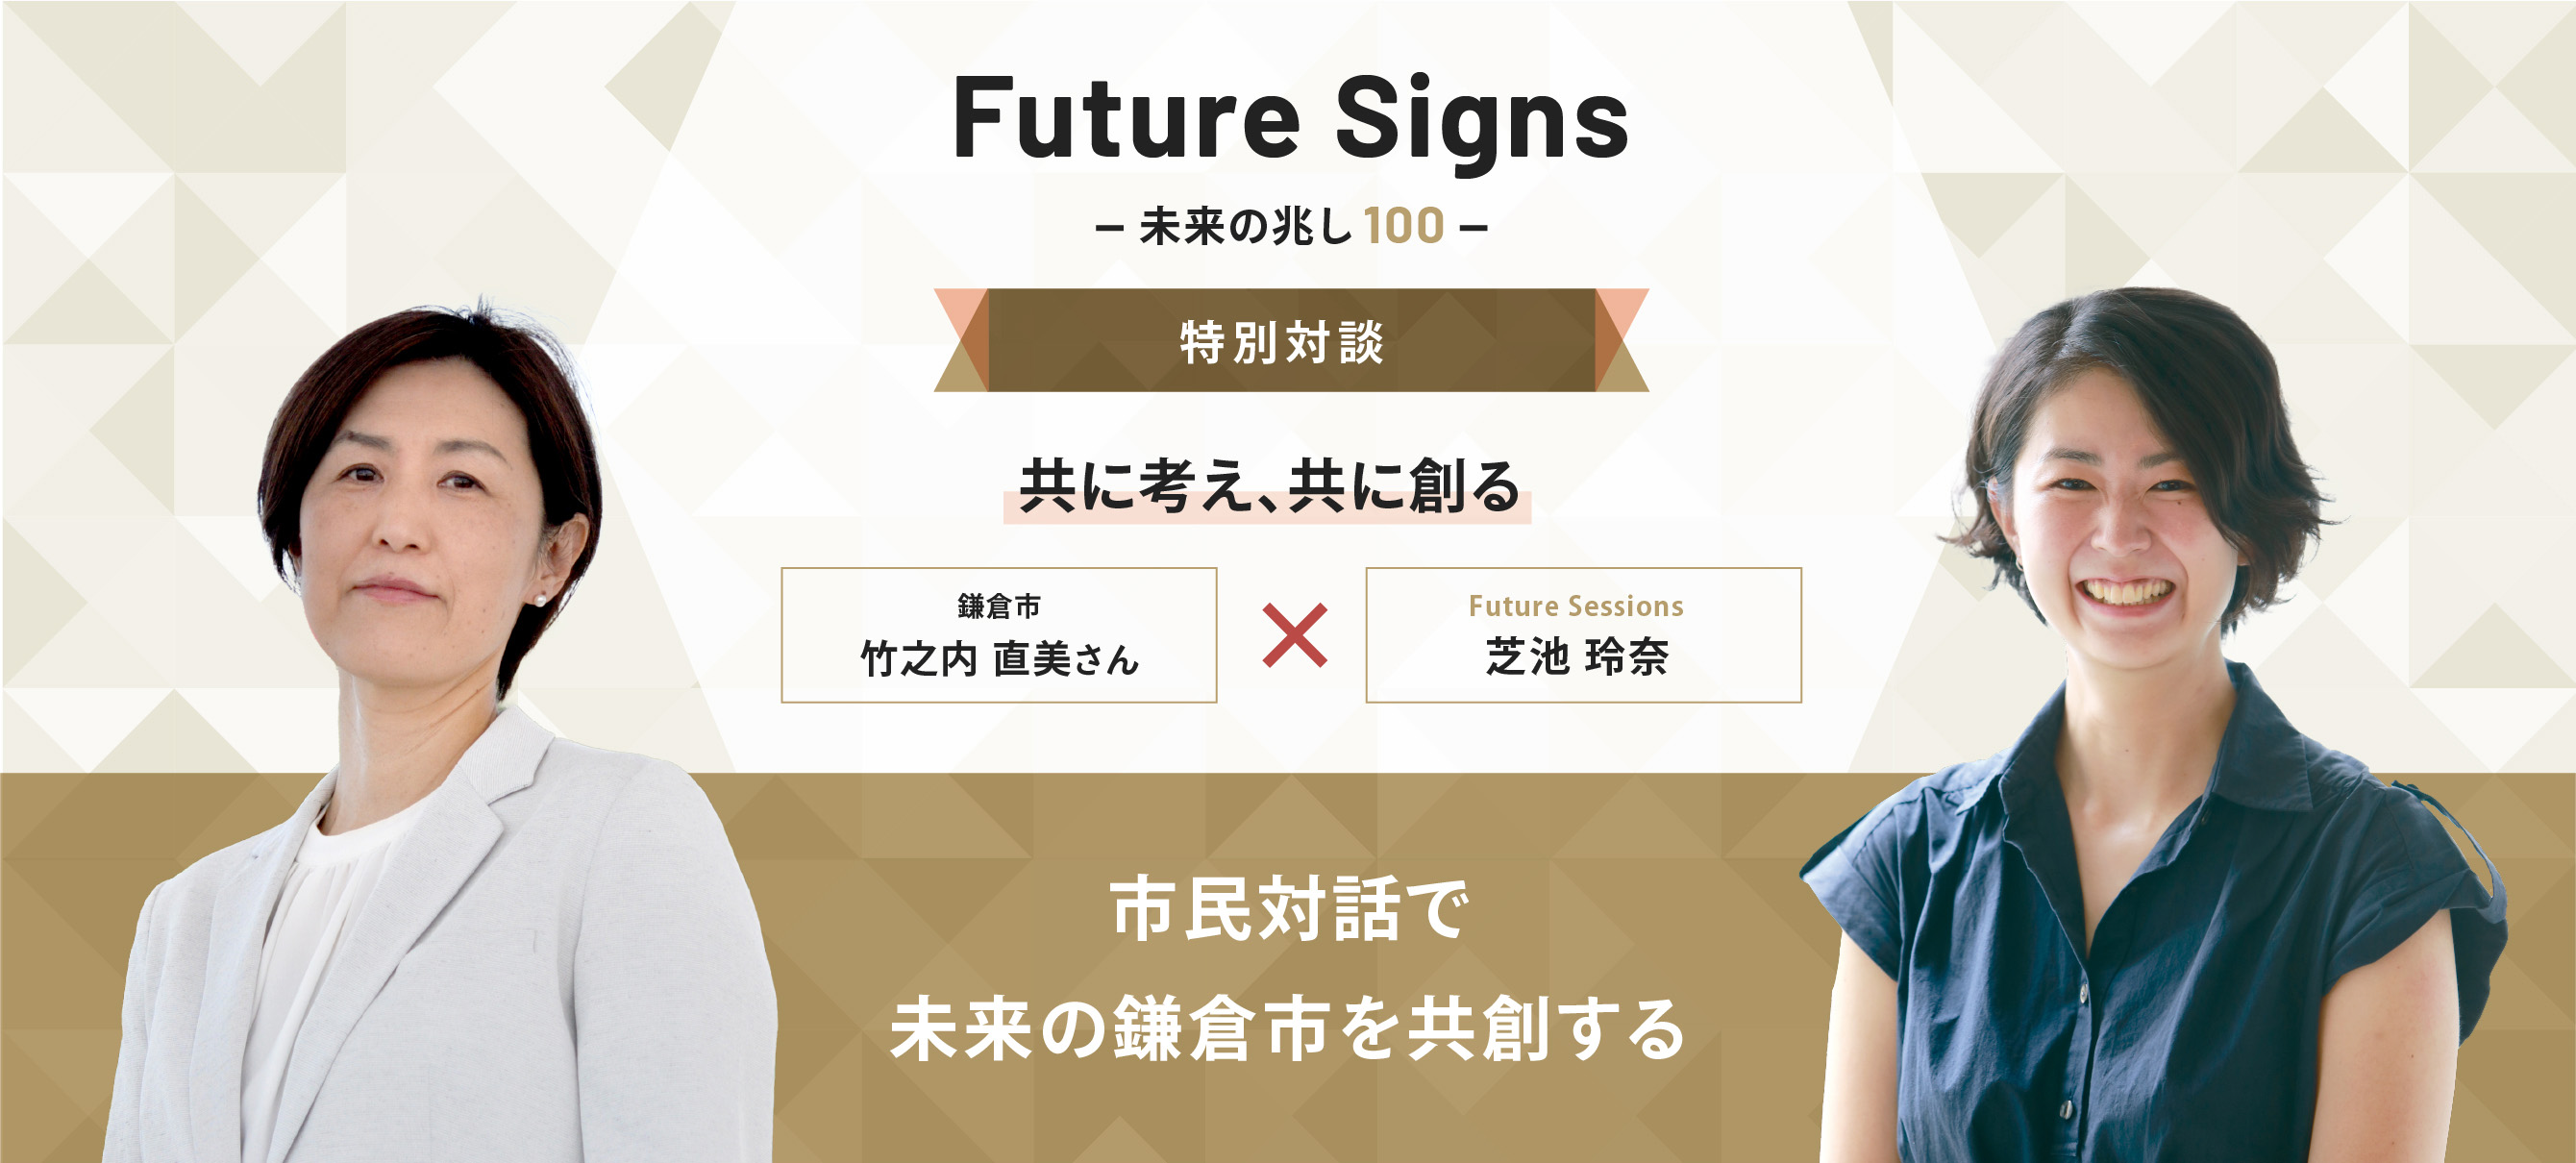 Future Signs 未来の兆し100 特別対談 共に考え、共に創る 市民対話で未来の鎌倉市を共創する